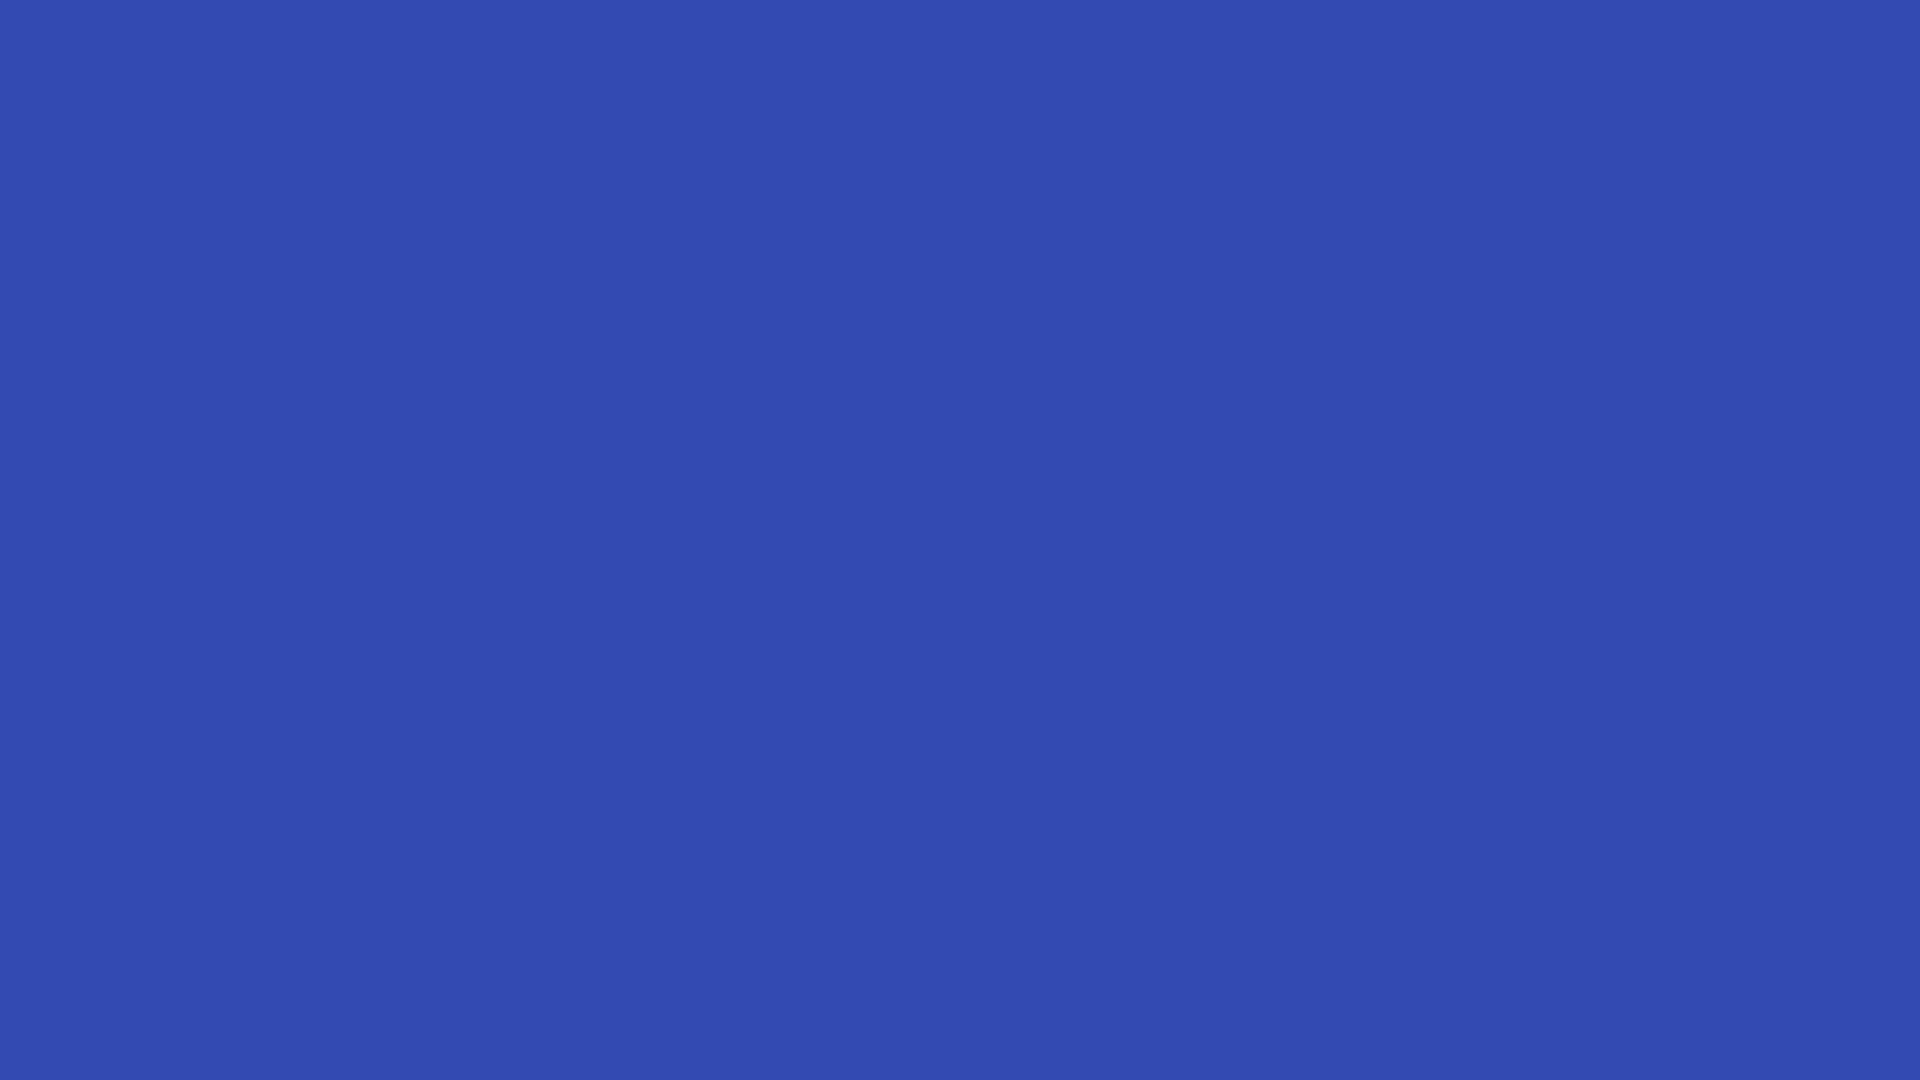 1920x1080 Violet-blue Solid Color Background